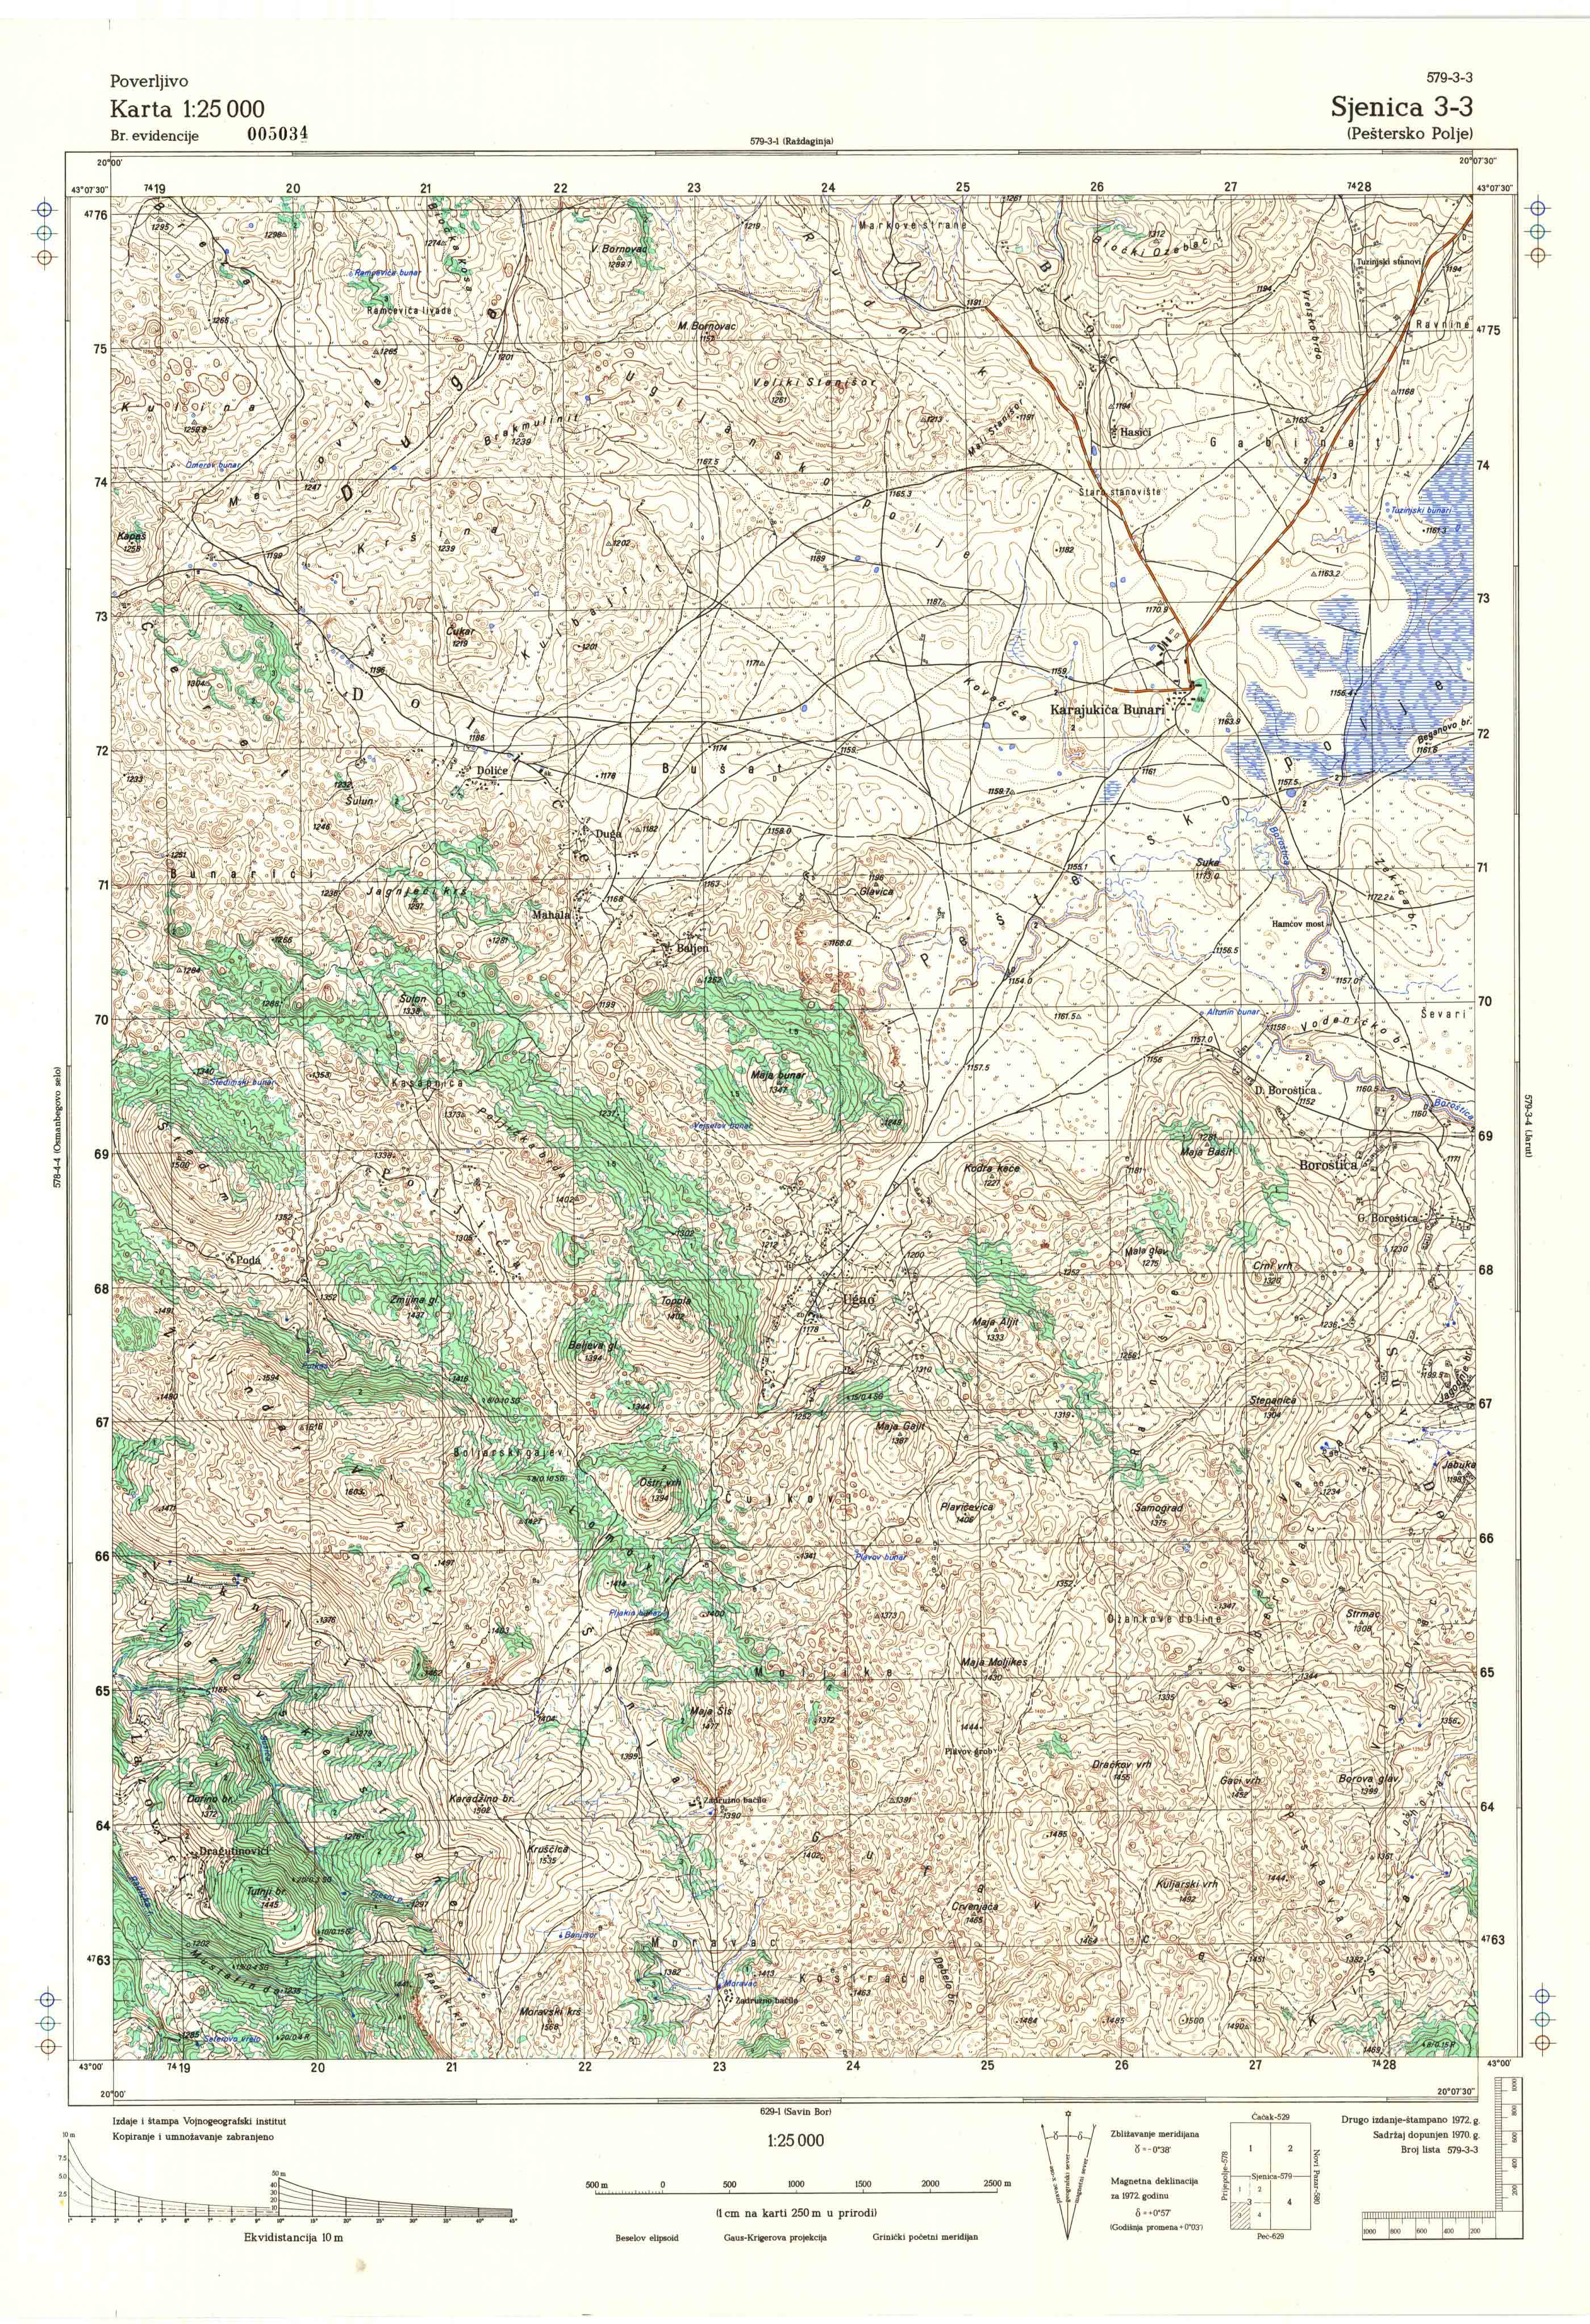  topografska karta srbije 25000 JNA  Sijenica